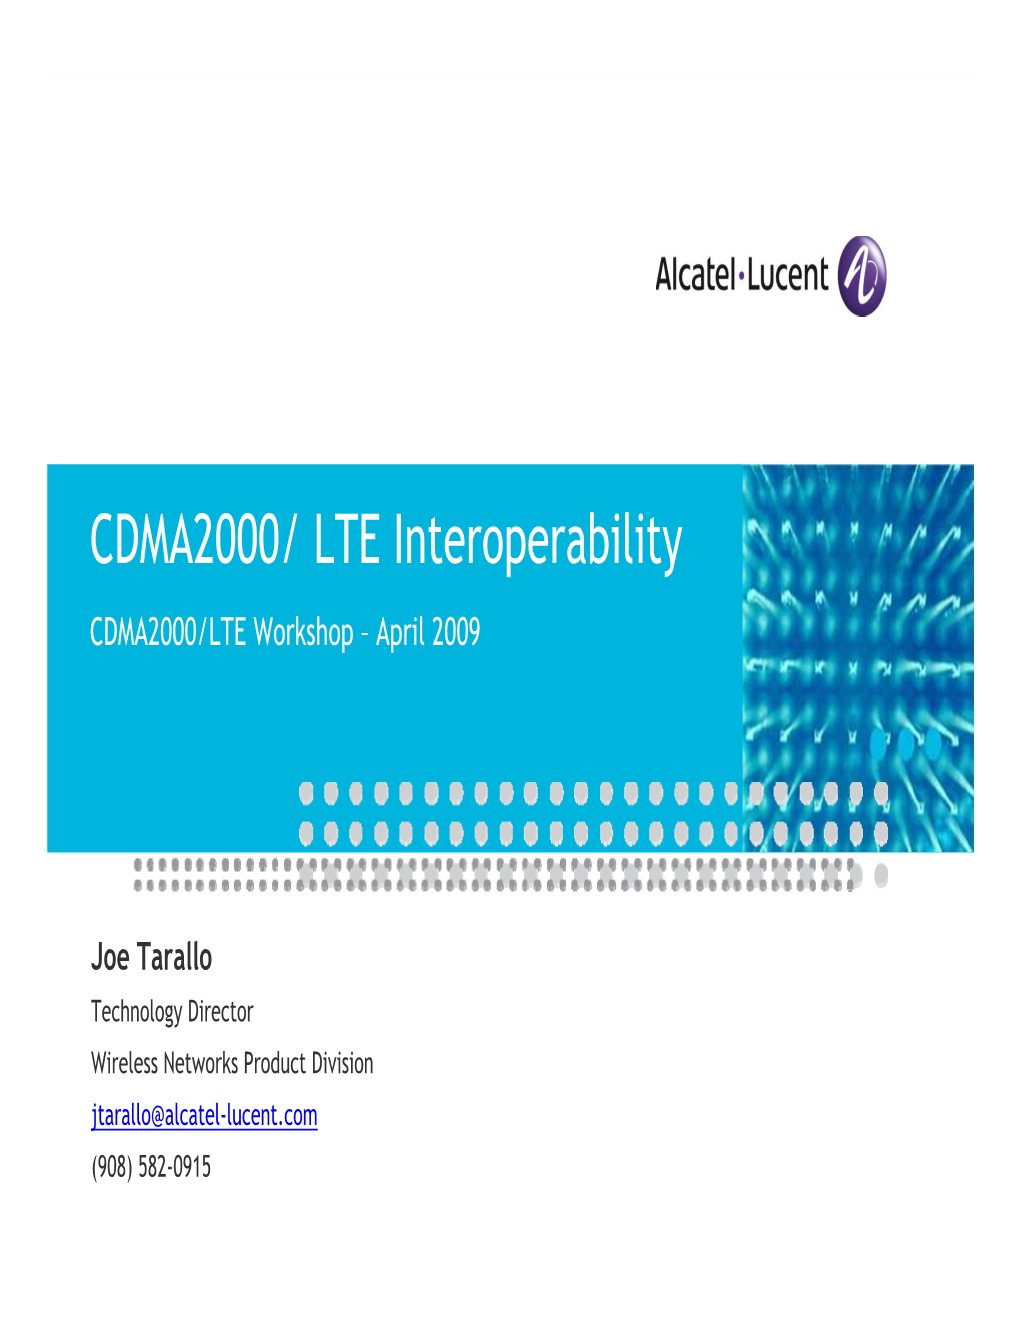 CDMA2000/ LTE Interoperability, Alcatel-Lucent, April 09